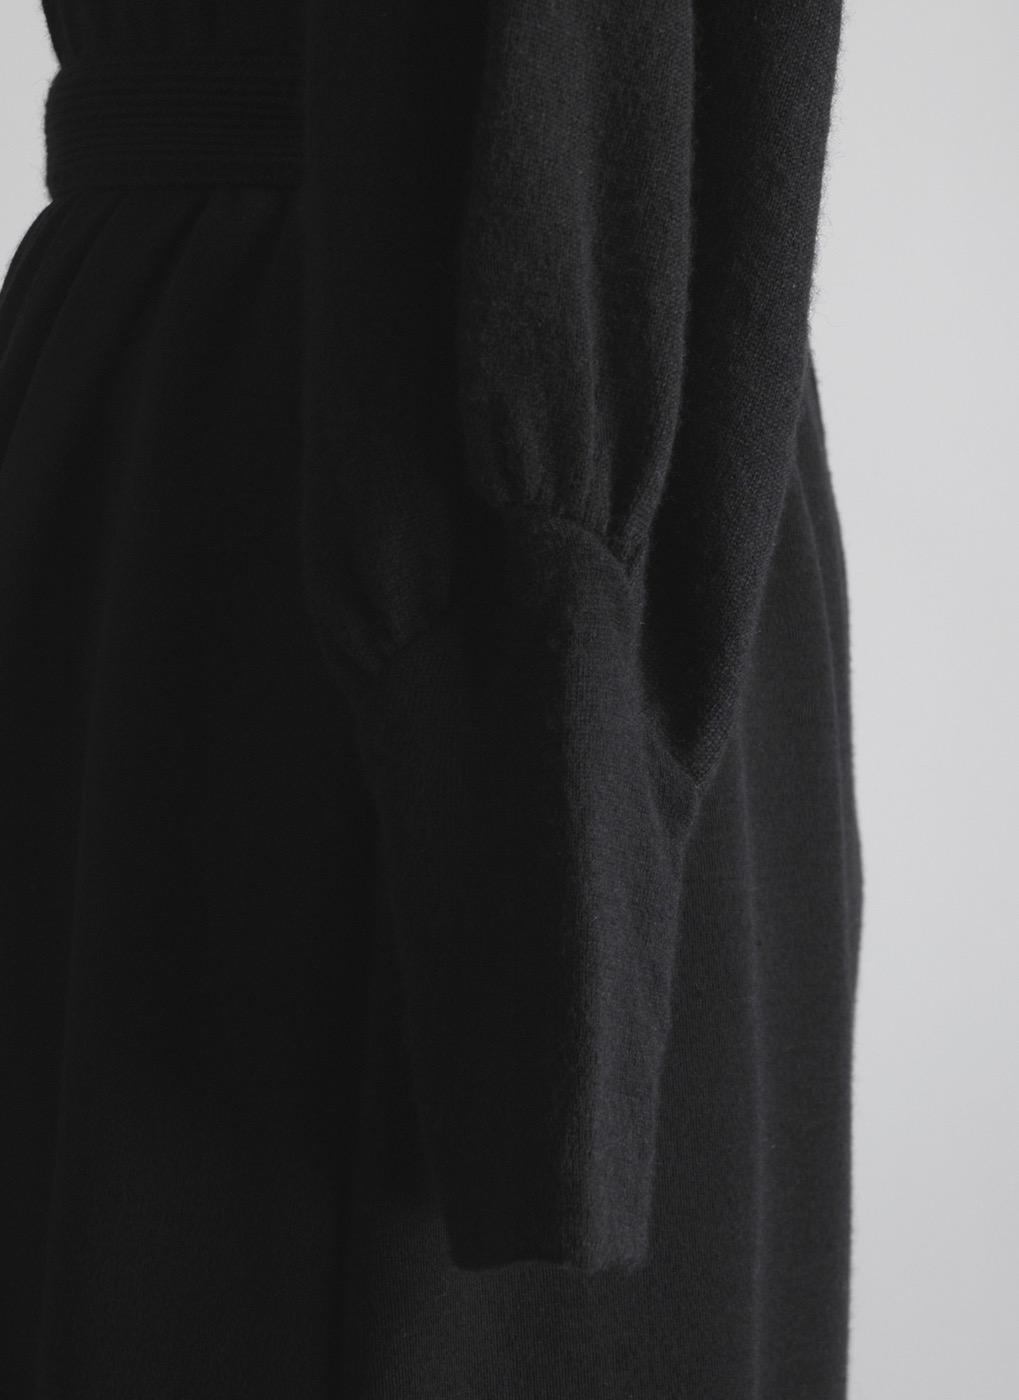 1980s Talbots black wool dress